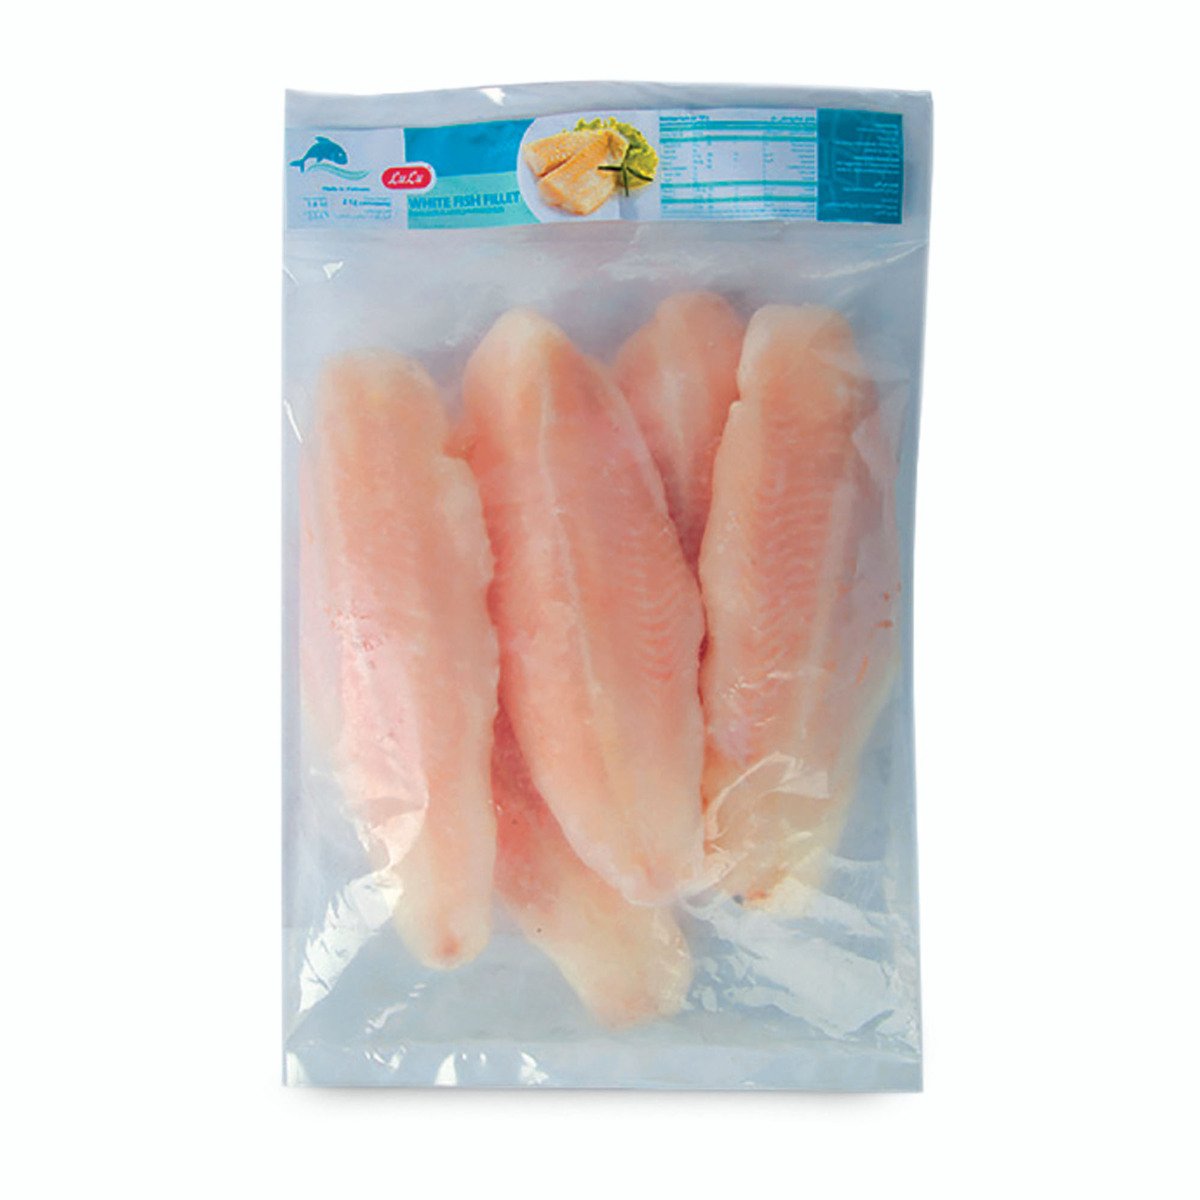 اشتري قم بشراء لولو فيليه سمك أبيض مجمد بنغاسيوس 2 كجم Online at Best Price من الموقع - من لولو هايبر ماركت Frozen Whole Fish في الامارات